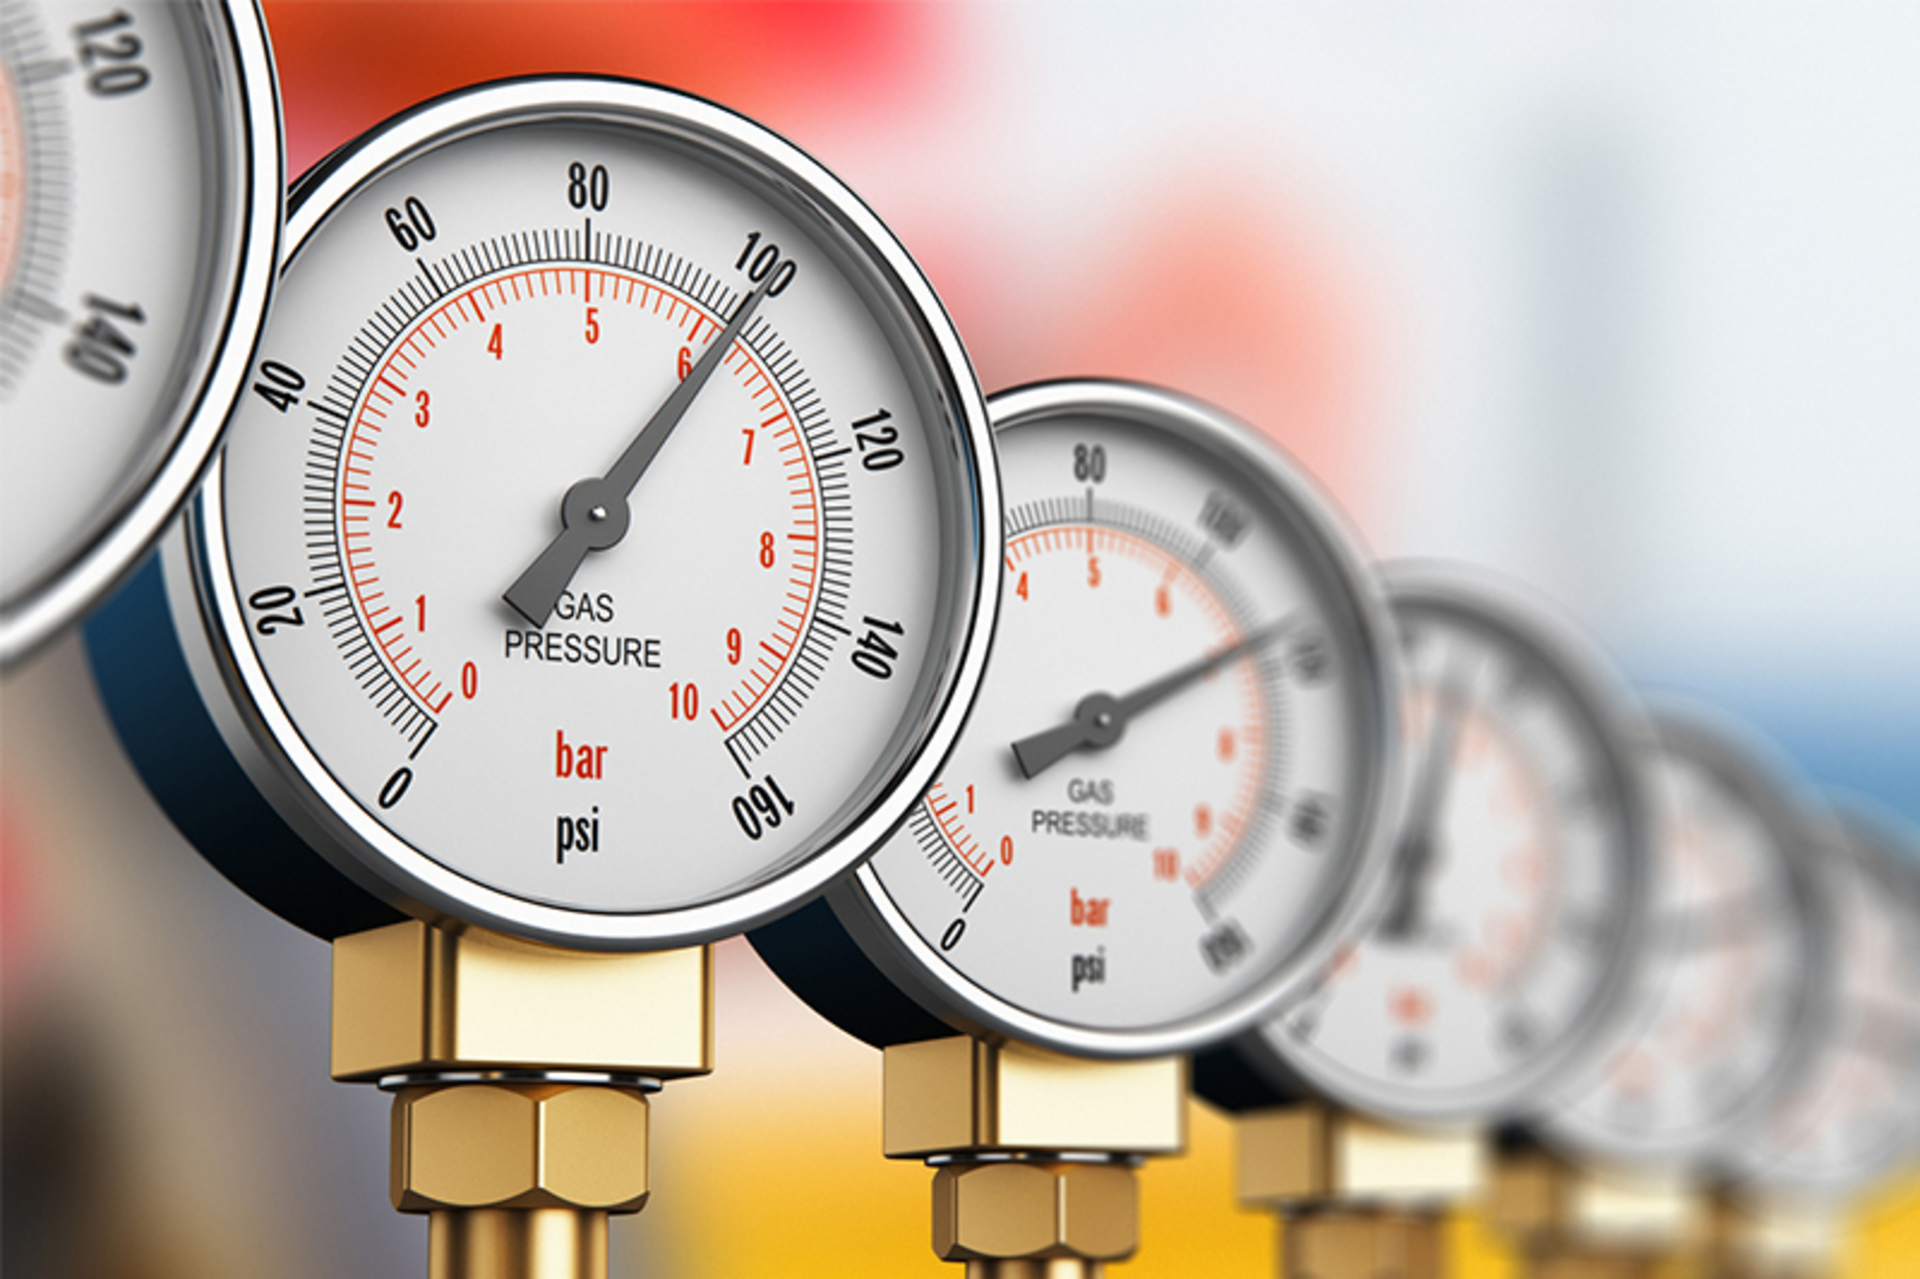 digital steam pressure gauge